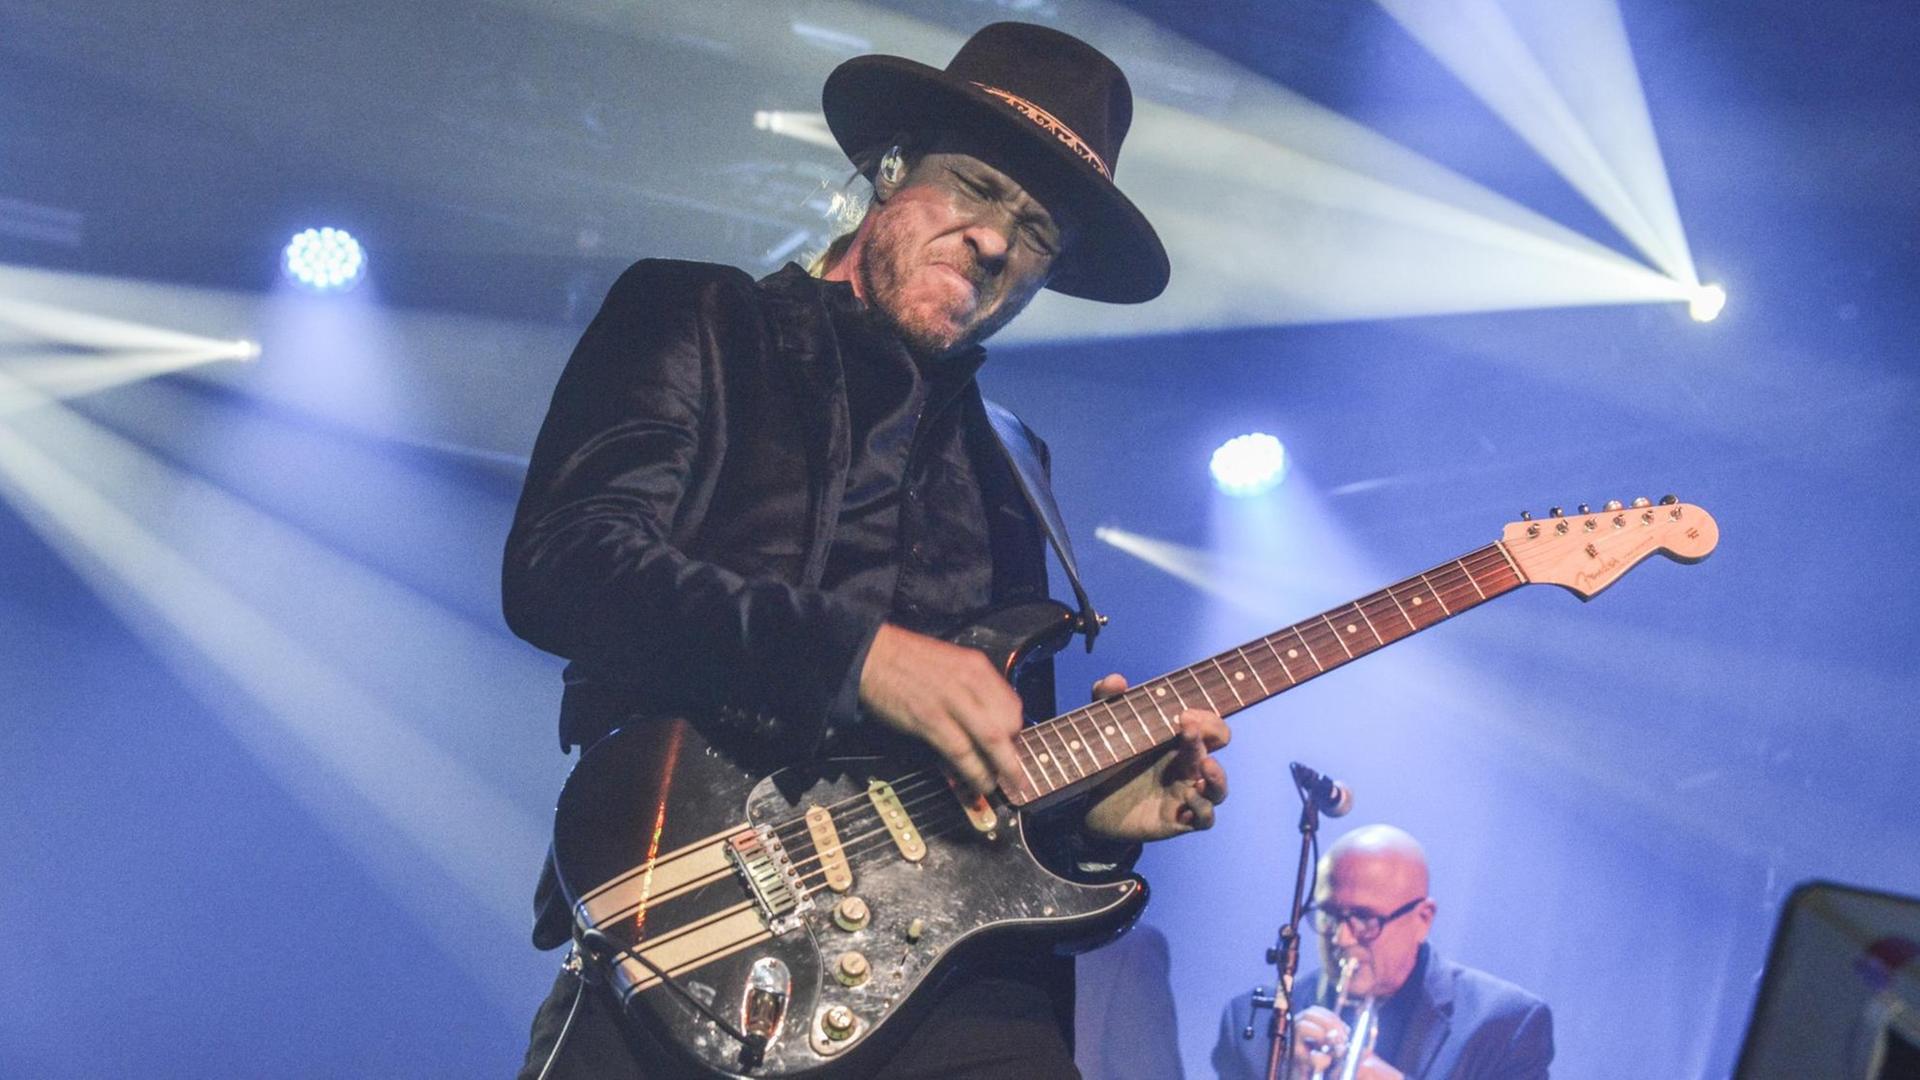 Ein Mann mit schwarzem Samt-Jackett, blonden Haaren und Hut auf dem Kopf steht im Scheinwerferlicht auf der Bühne und spielt mit geschlossenen Augen eine schwarze E-Gitarre.